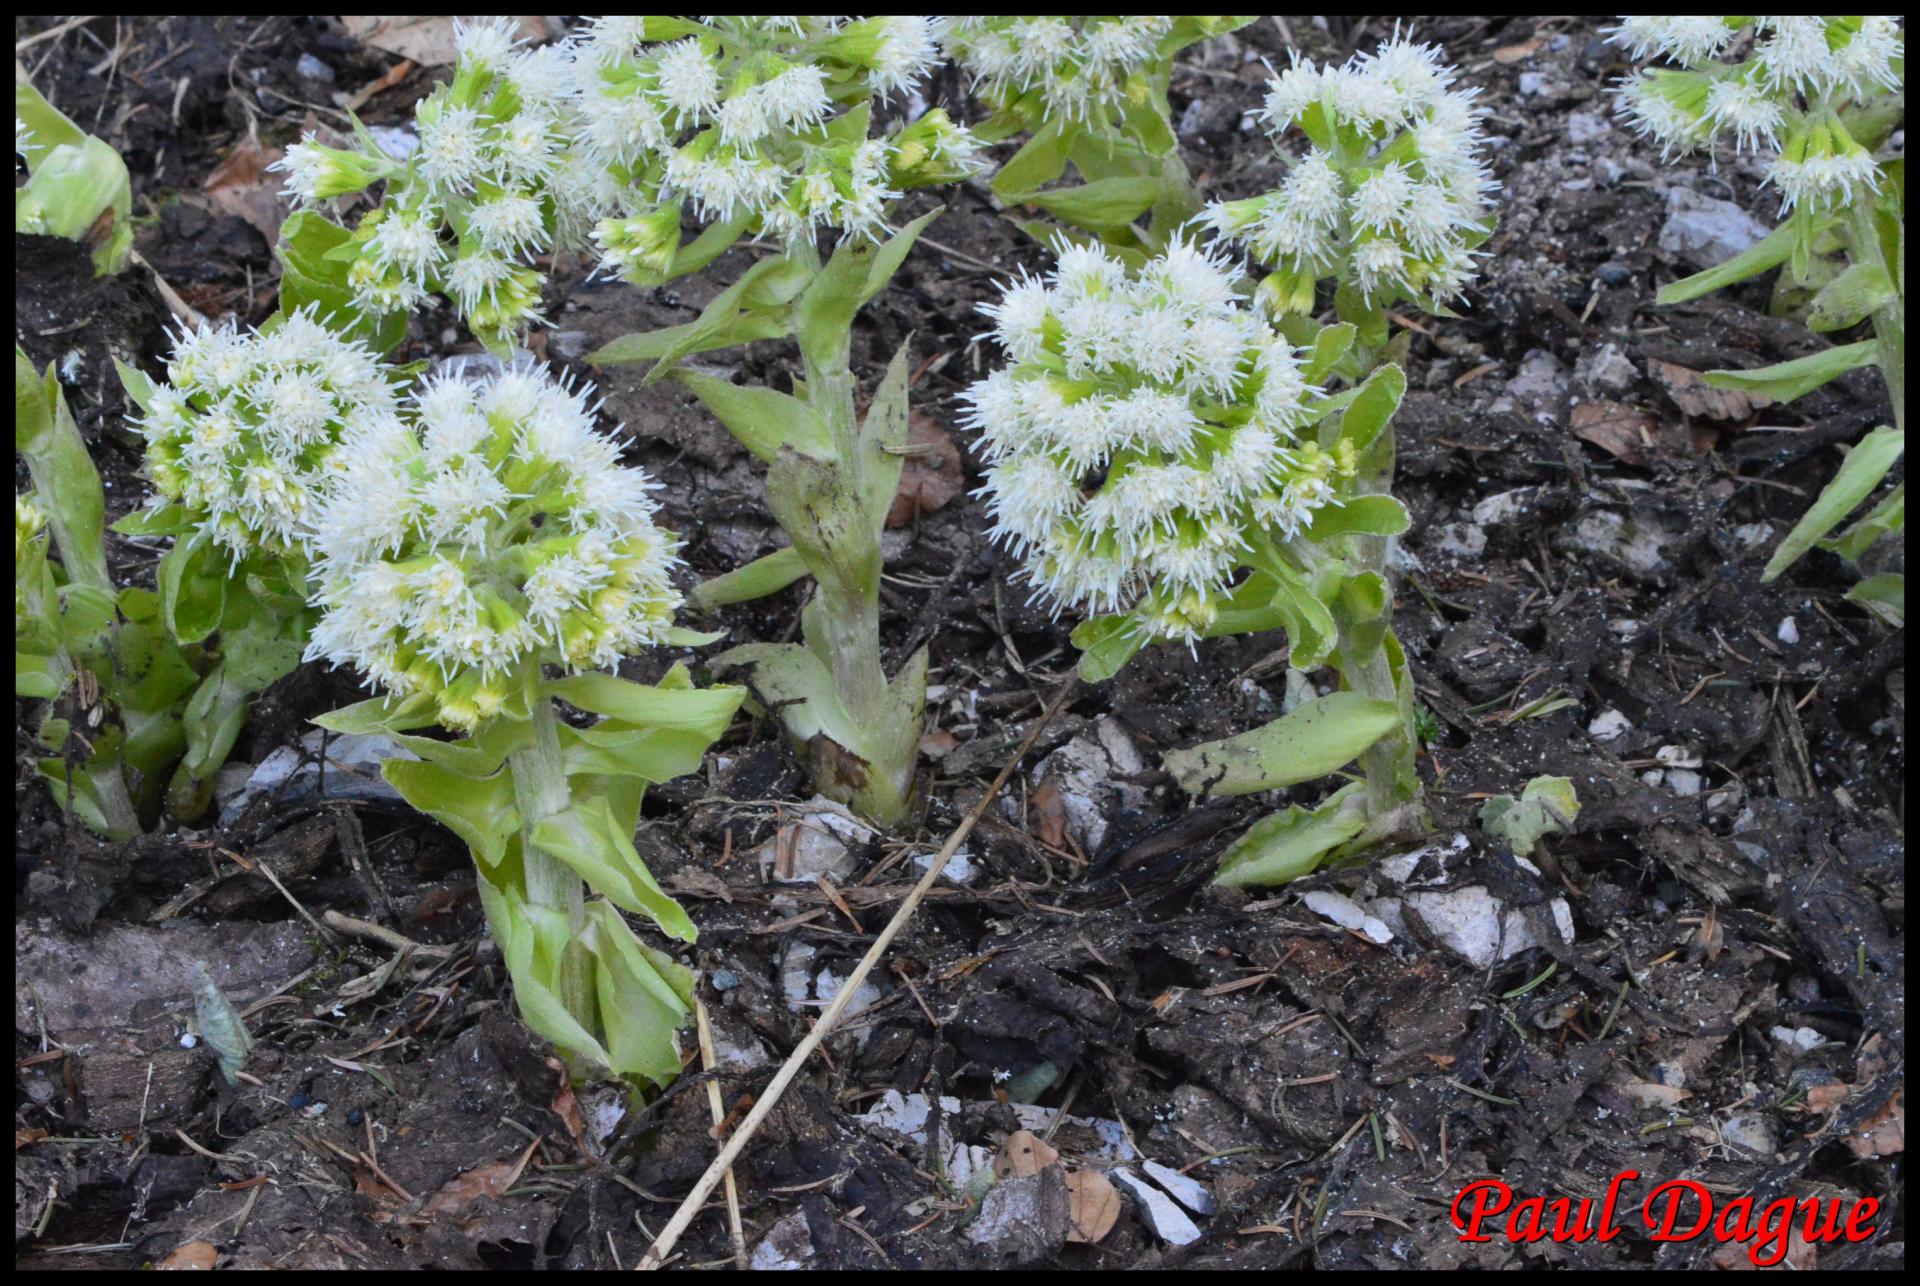 355 petasite blanche petasite albus asteraceae resultat